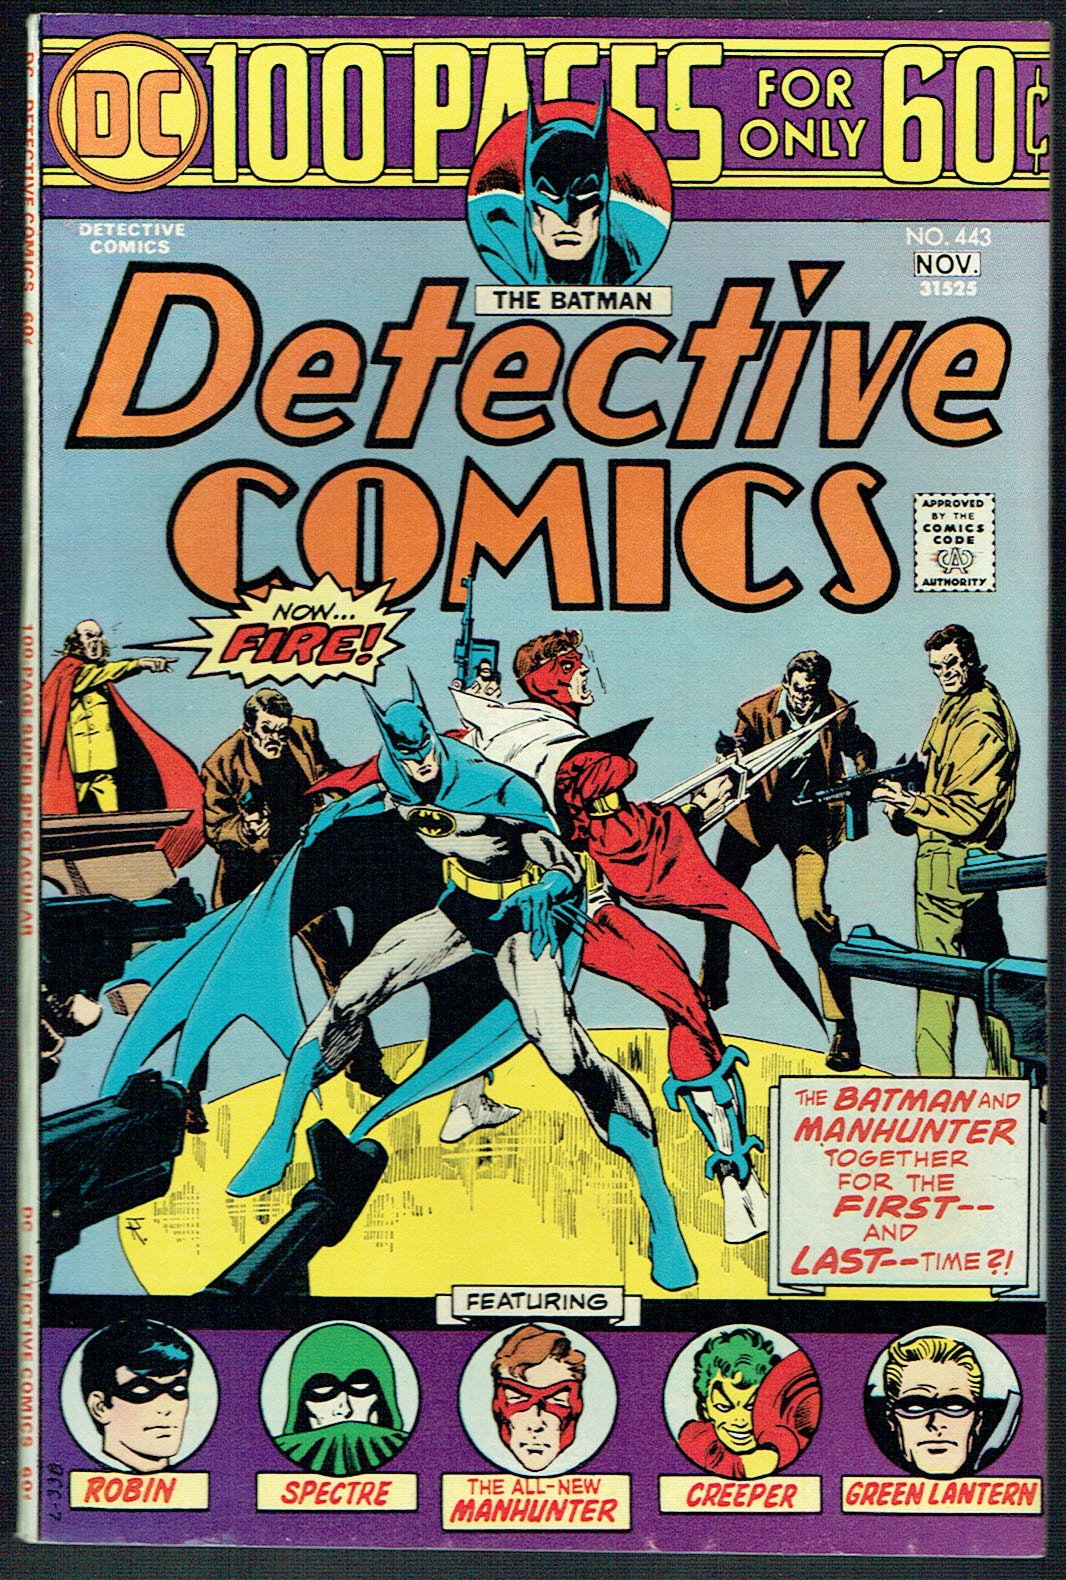 Detective Comics #443